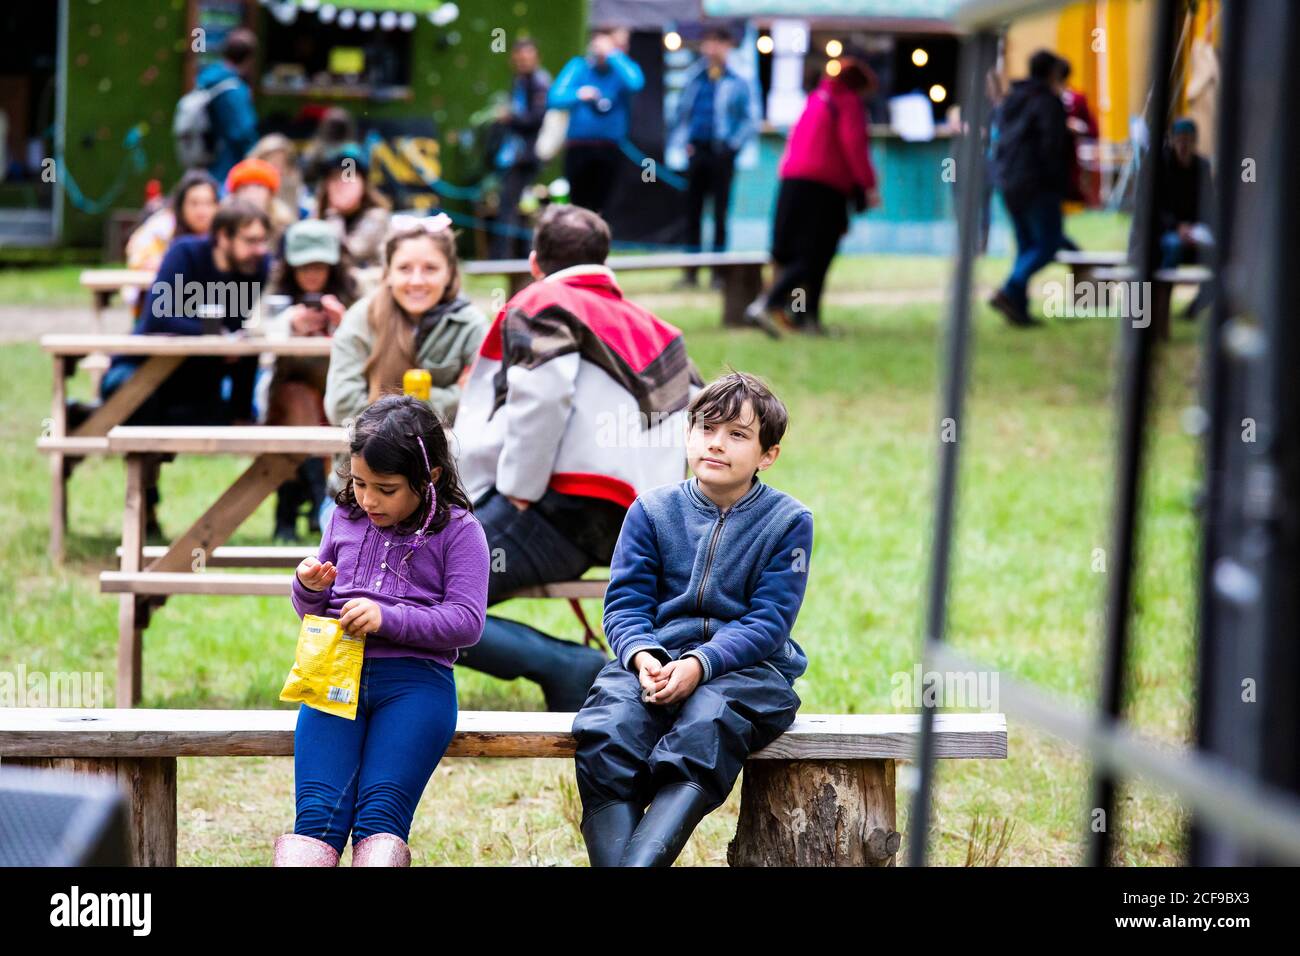 Wir sind kein Festival sozial distanziert Veranstaltung in Pippingford Park - Camping mit Festivalstimmung Stockfoto